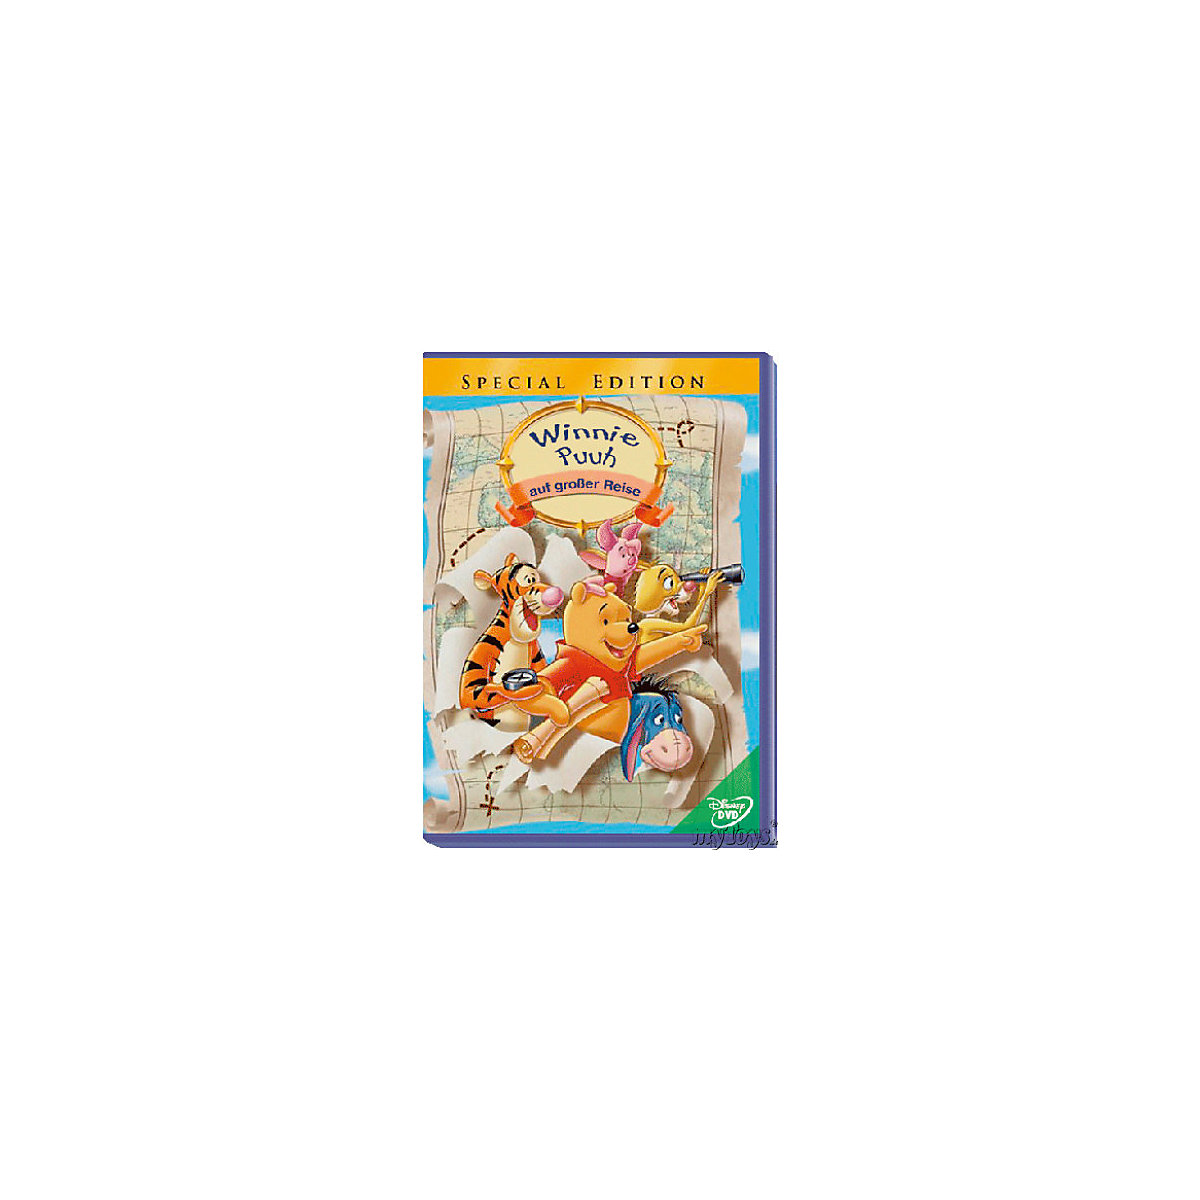 DVD Winnie the Pooh auf grosser Reise